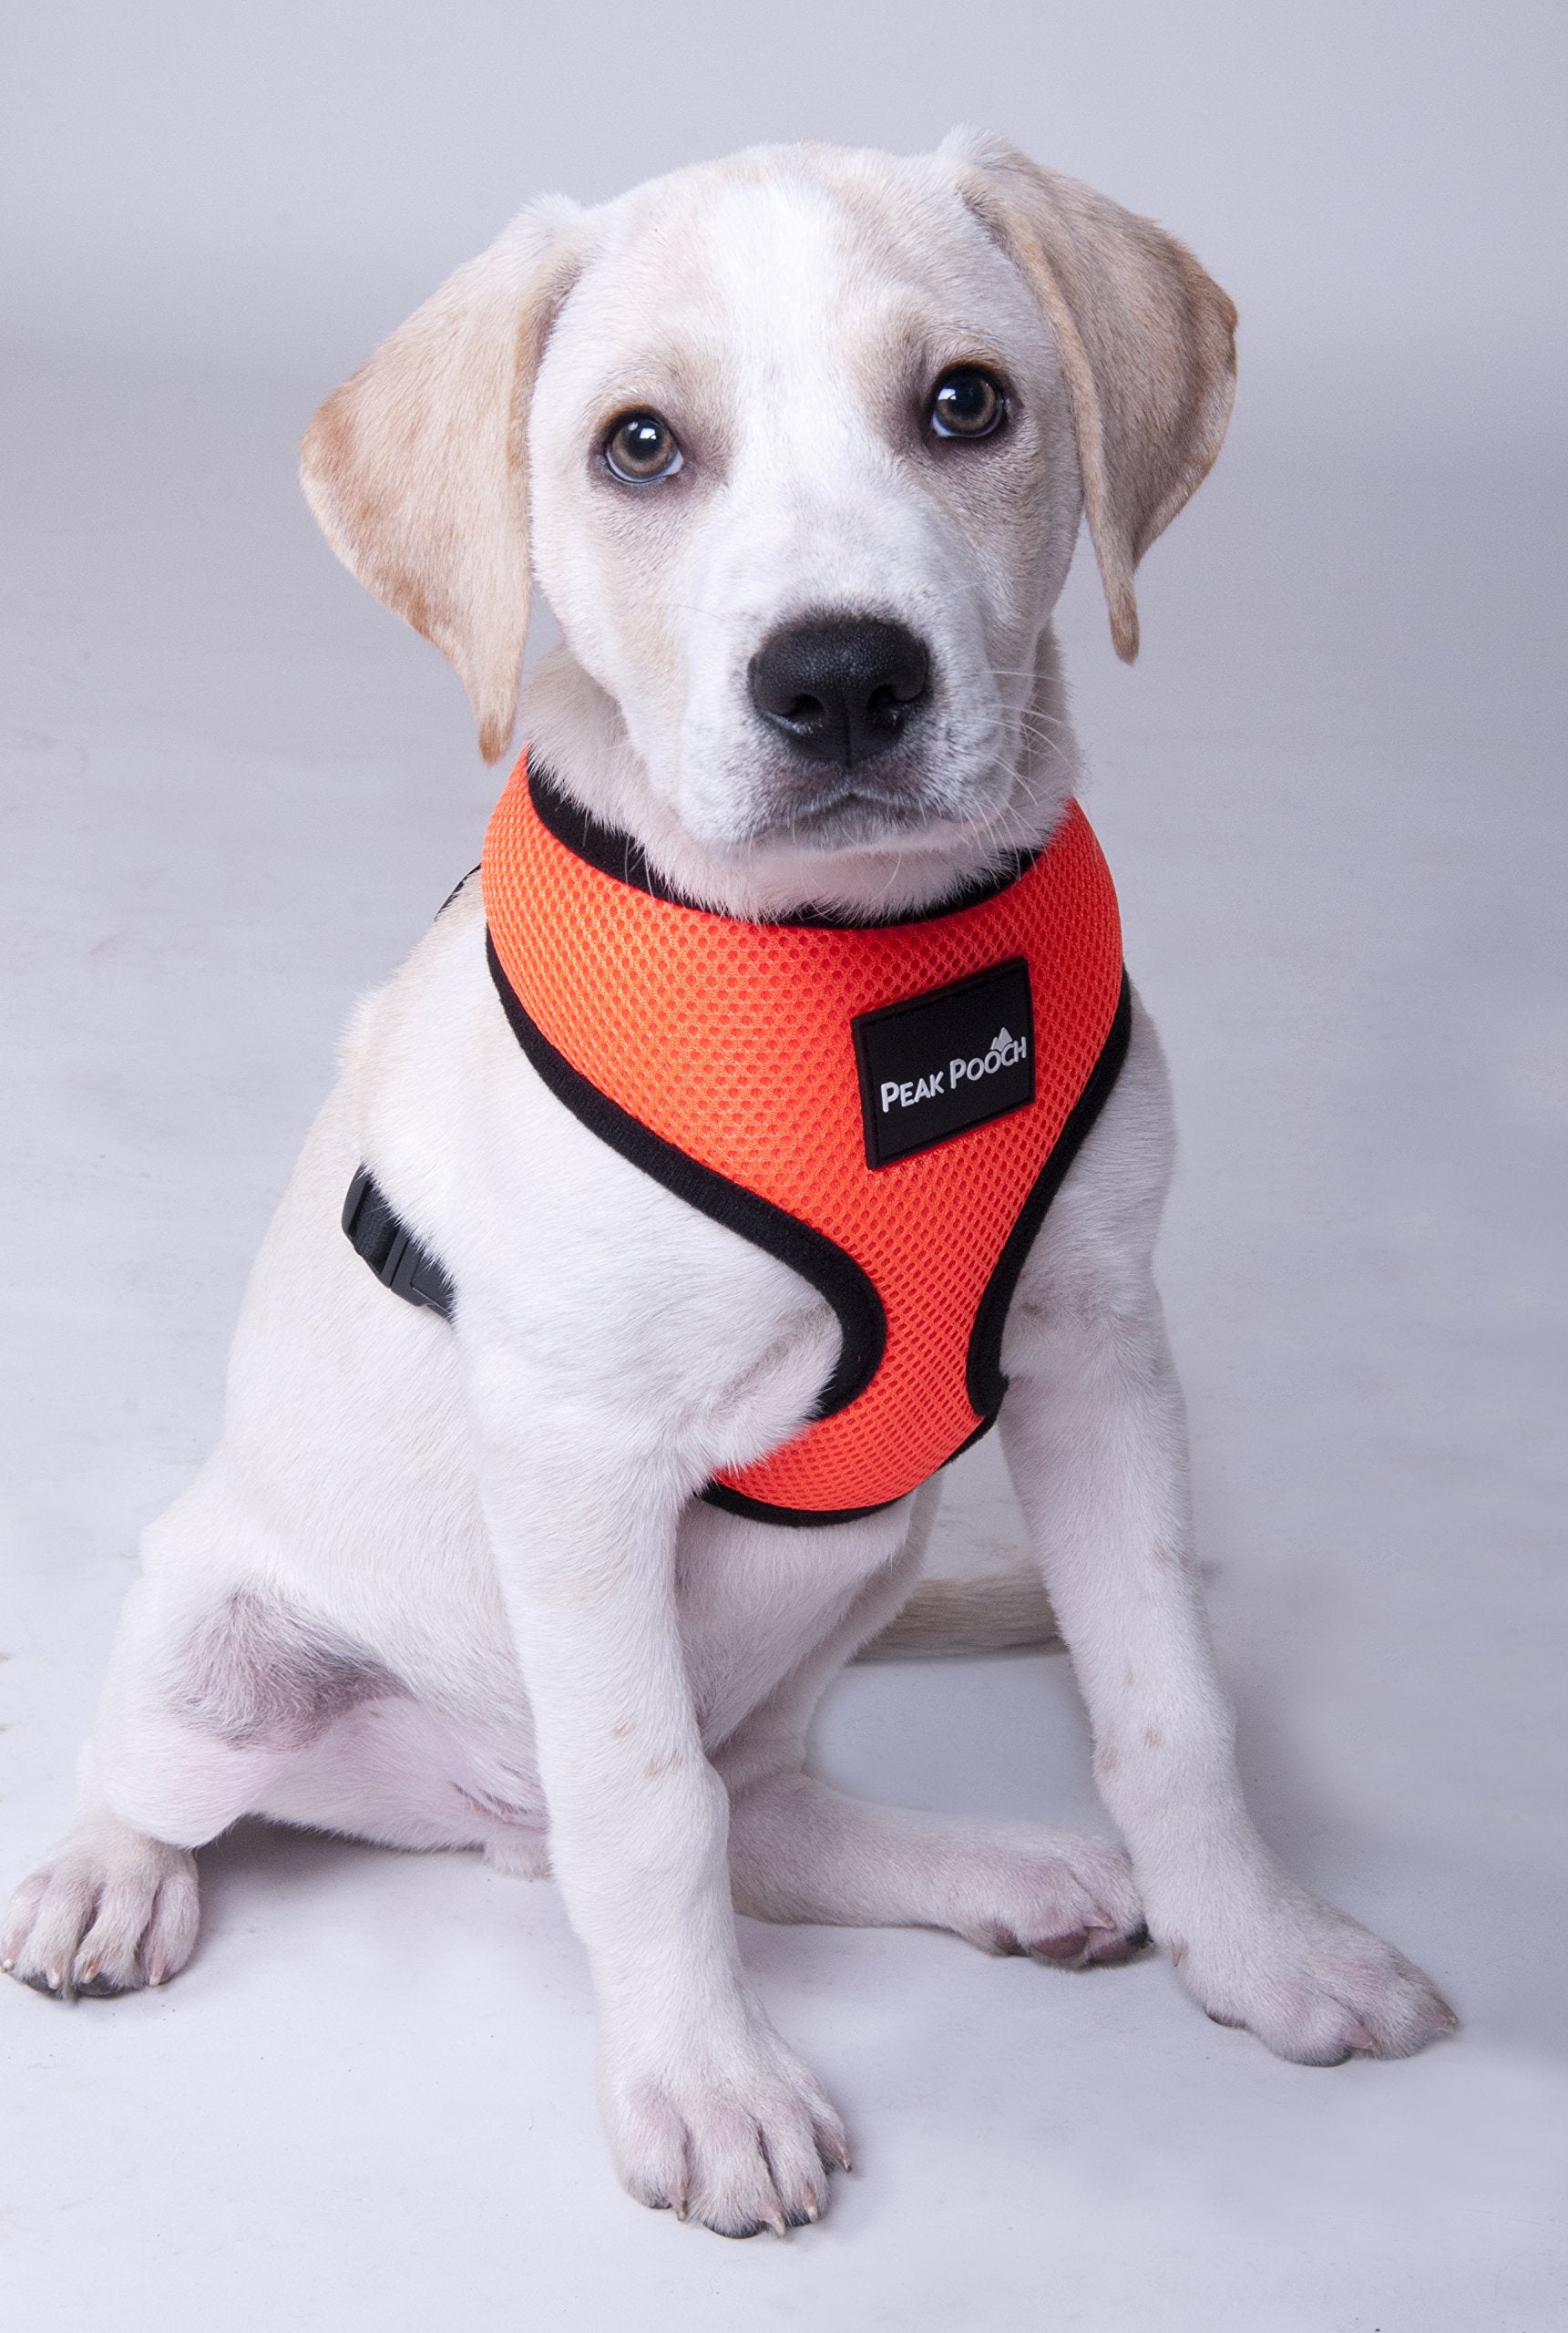 Peak Pooch Adjustable Soft Padded Dog Collar Red Large